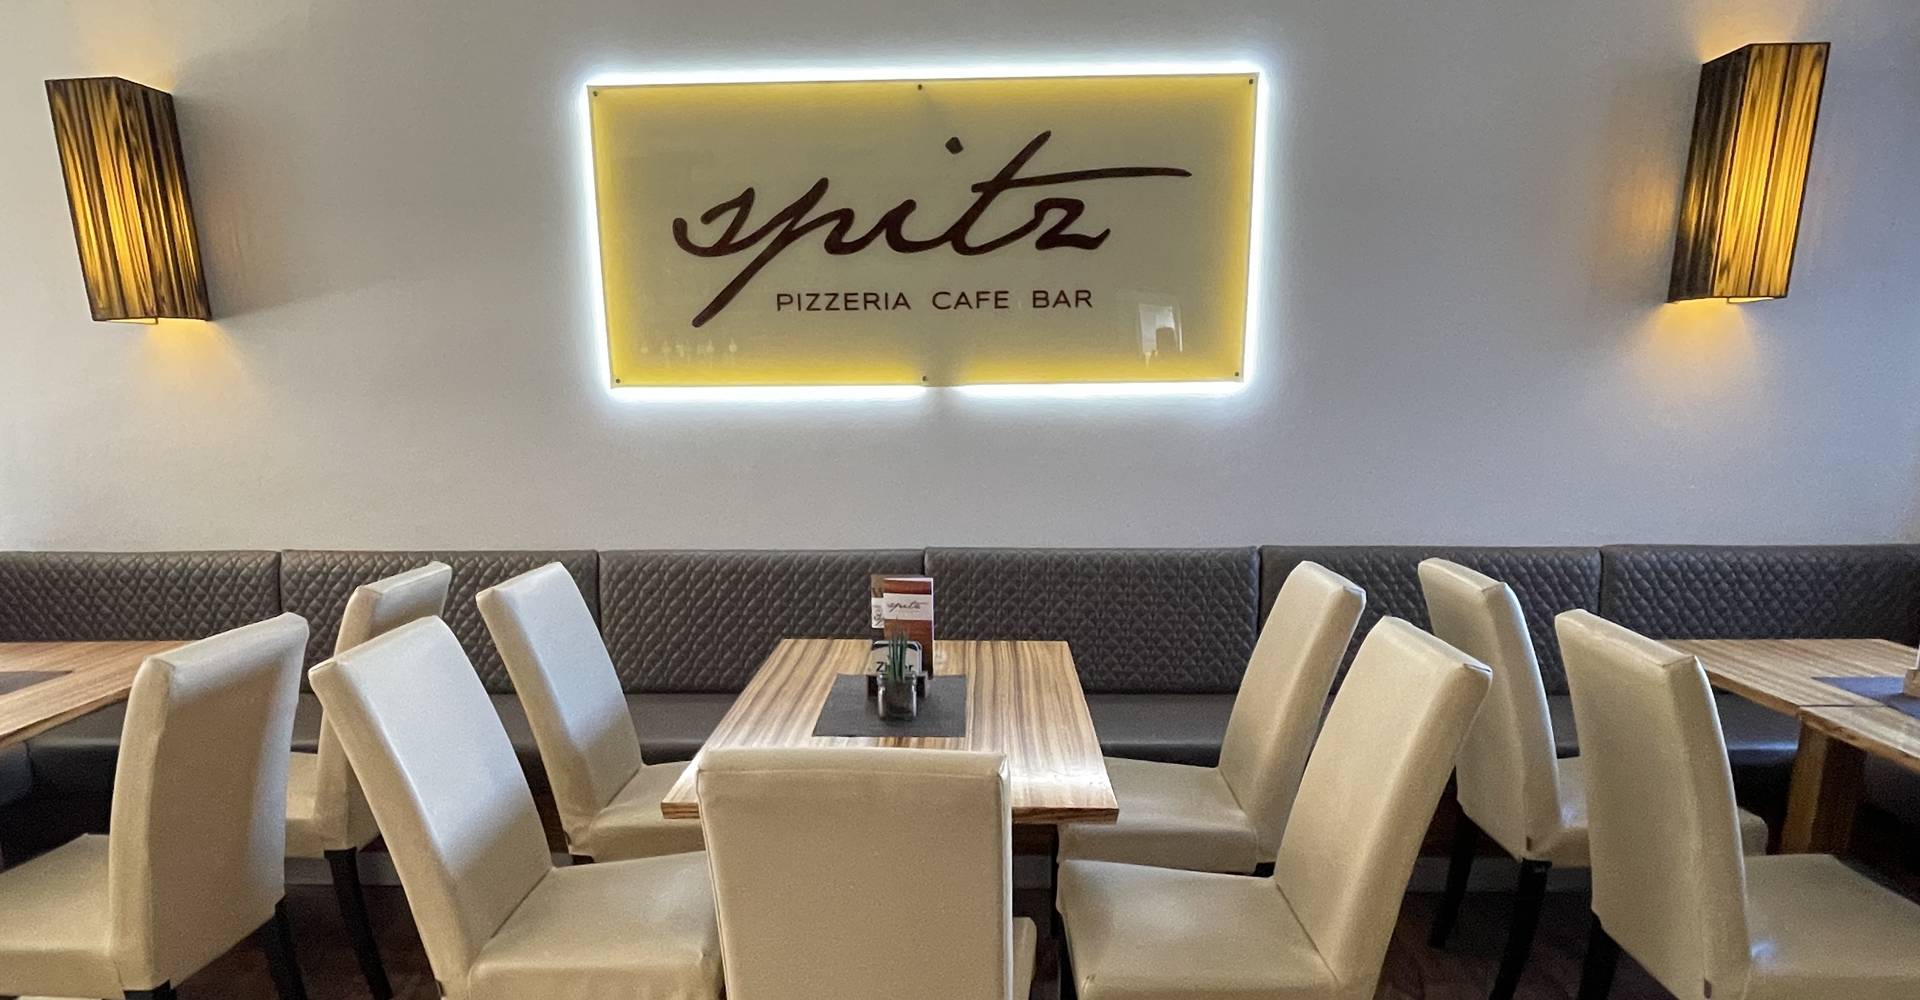 Spitz Pizzeria Cafe Bar aus Sarleinsbach in Oberösterreich